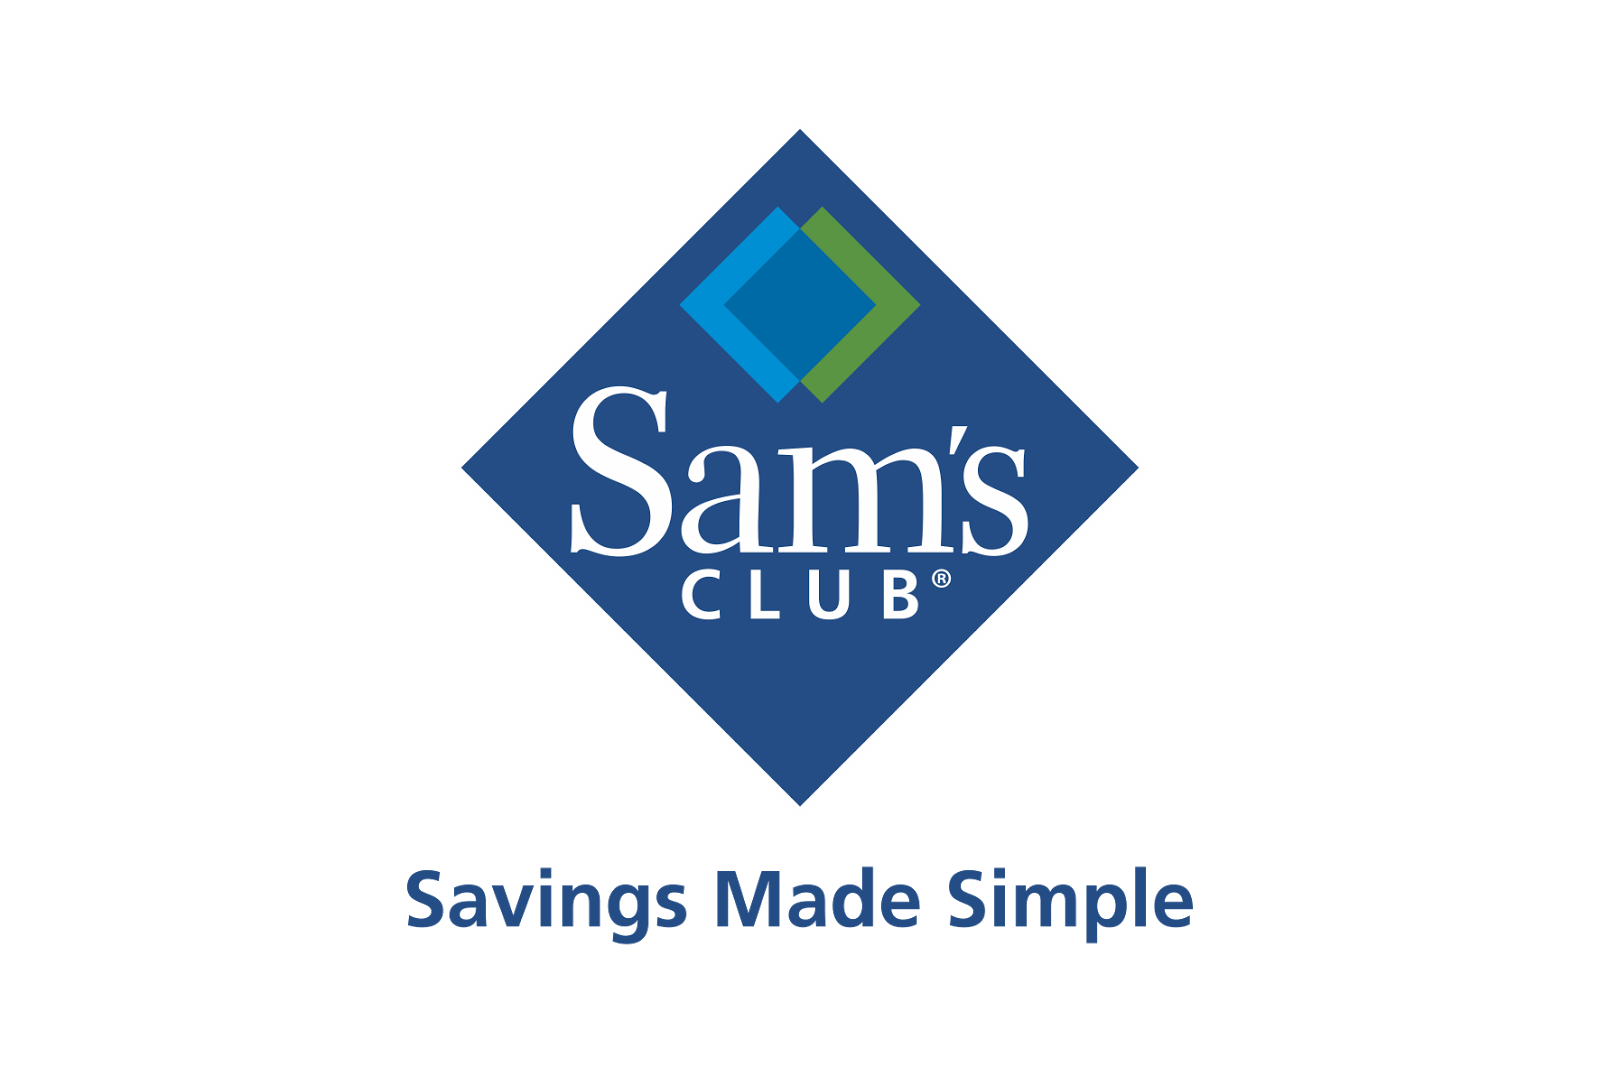 Sam's Club Mexico Logo - Sam's Club Mexico Logo Png Image